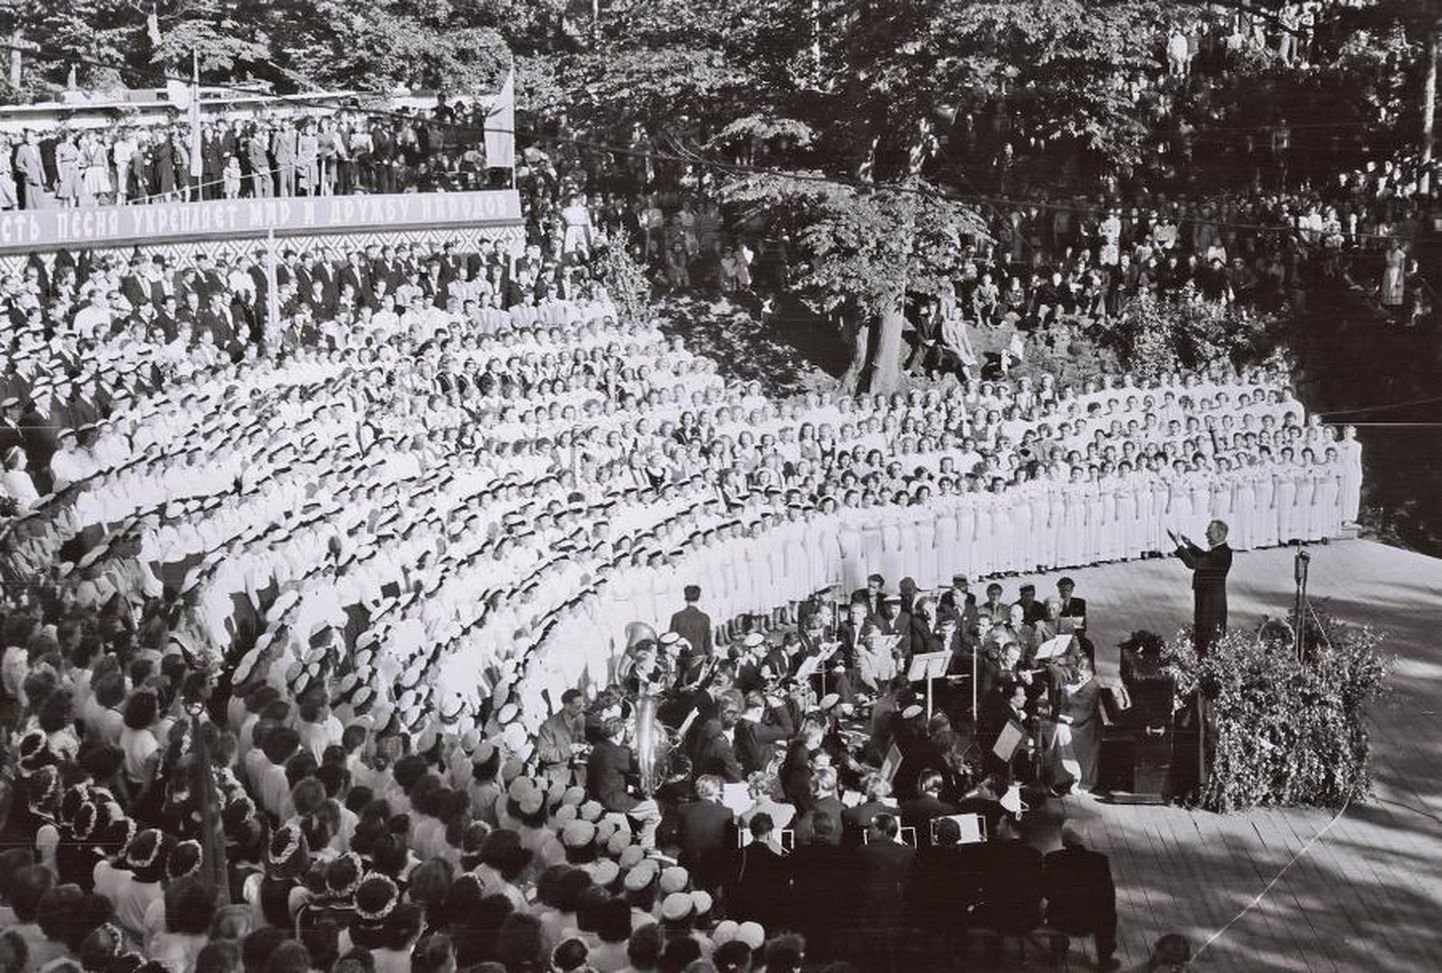 Esimene Gaudeamus peeti 1956. aasta juuli alguses Toomeorus. Osalejaid tuli kokku 2500 ning oru nõlvad olid palistatud pealtvaatajatest.